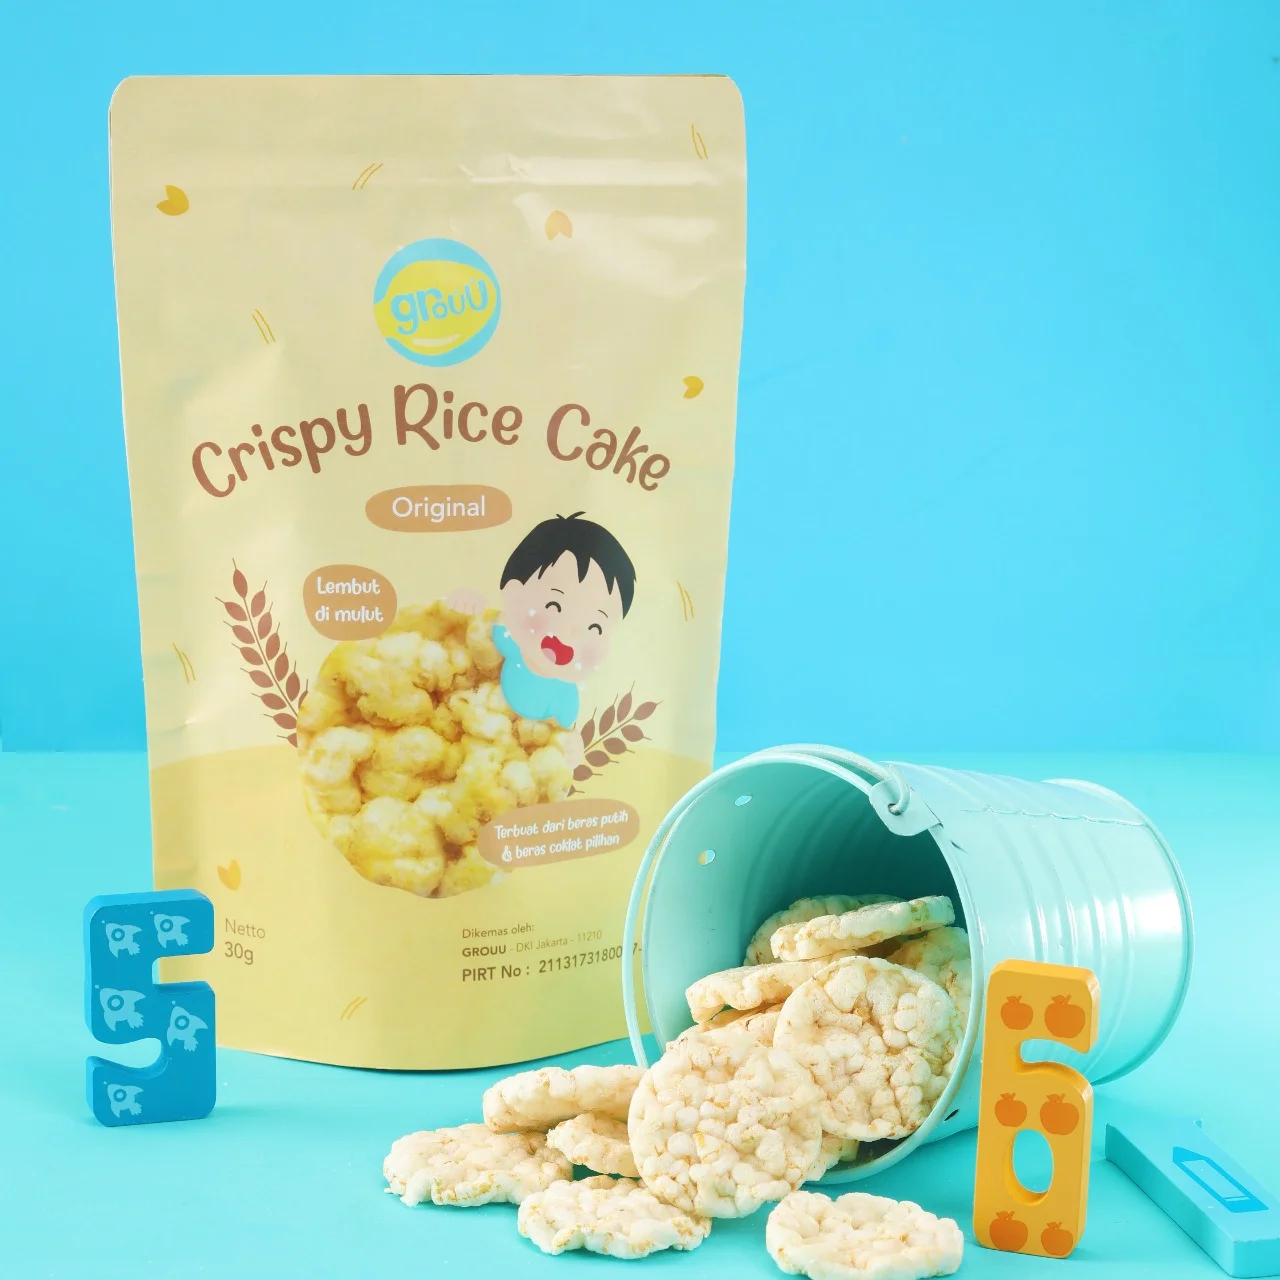 Crispy Rice Cake - Original